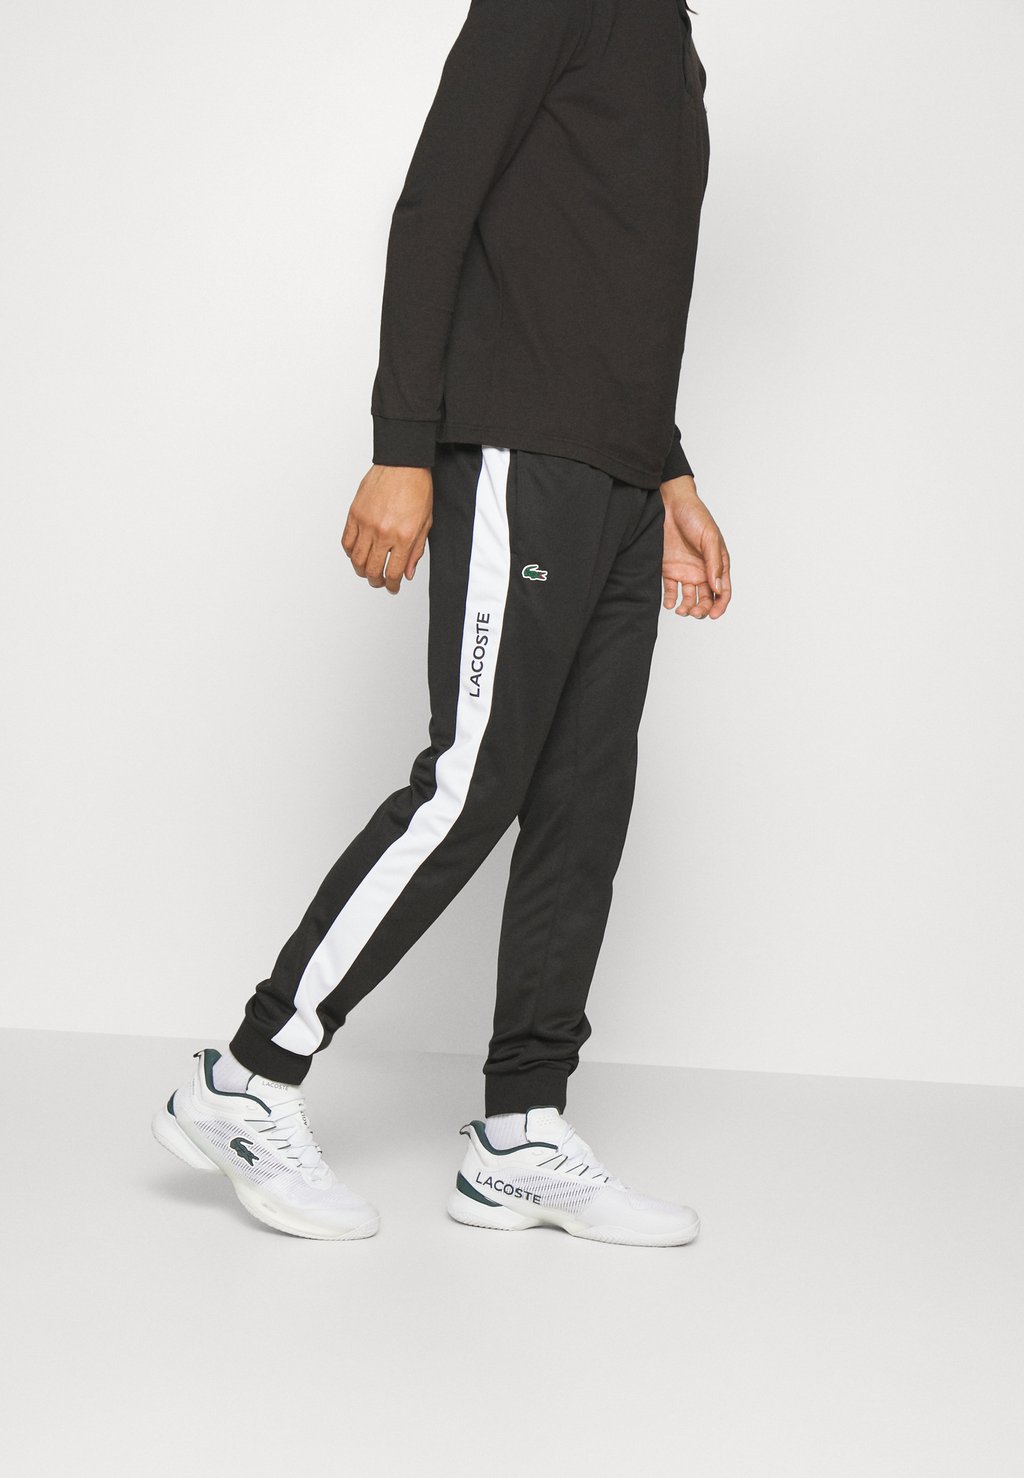 Спортивные брюки Tennis Pant Lacoste, цвет black/white брюки муж h67150 adidas tennis pant black white размер m